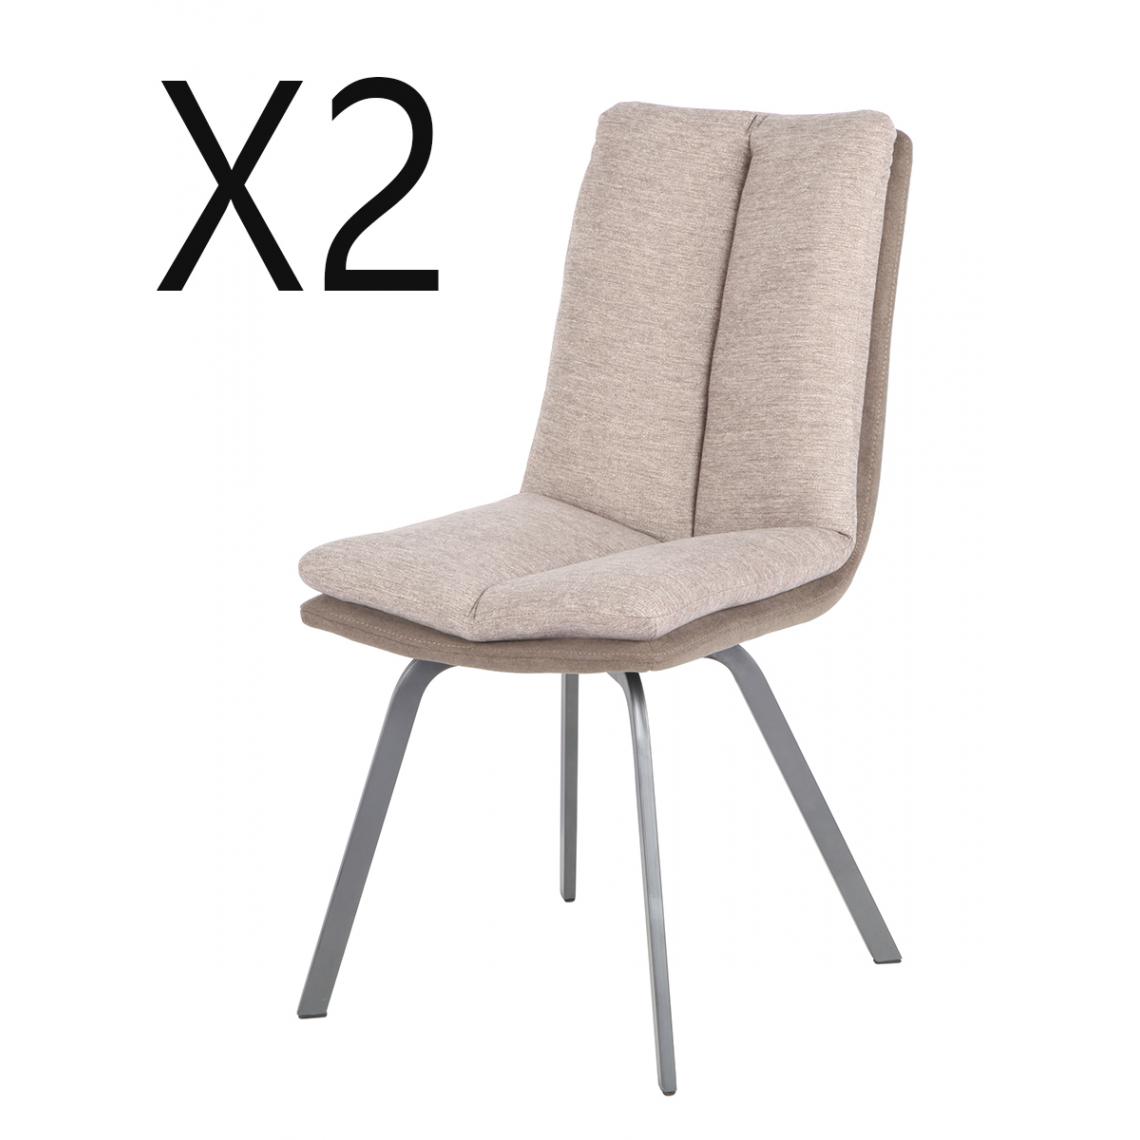 Pegane - Lot de 2 chaises coloris marron / beige en métal / tissu - Longueur 47 x Profondeur 65 x hauteur 86 x hauteur Assise 48 cm - Chaises